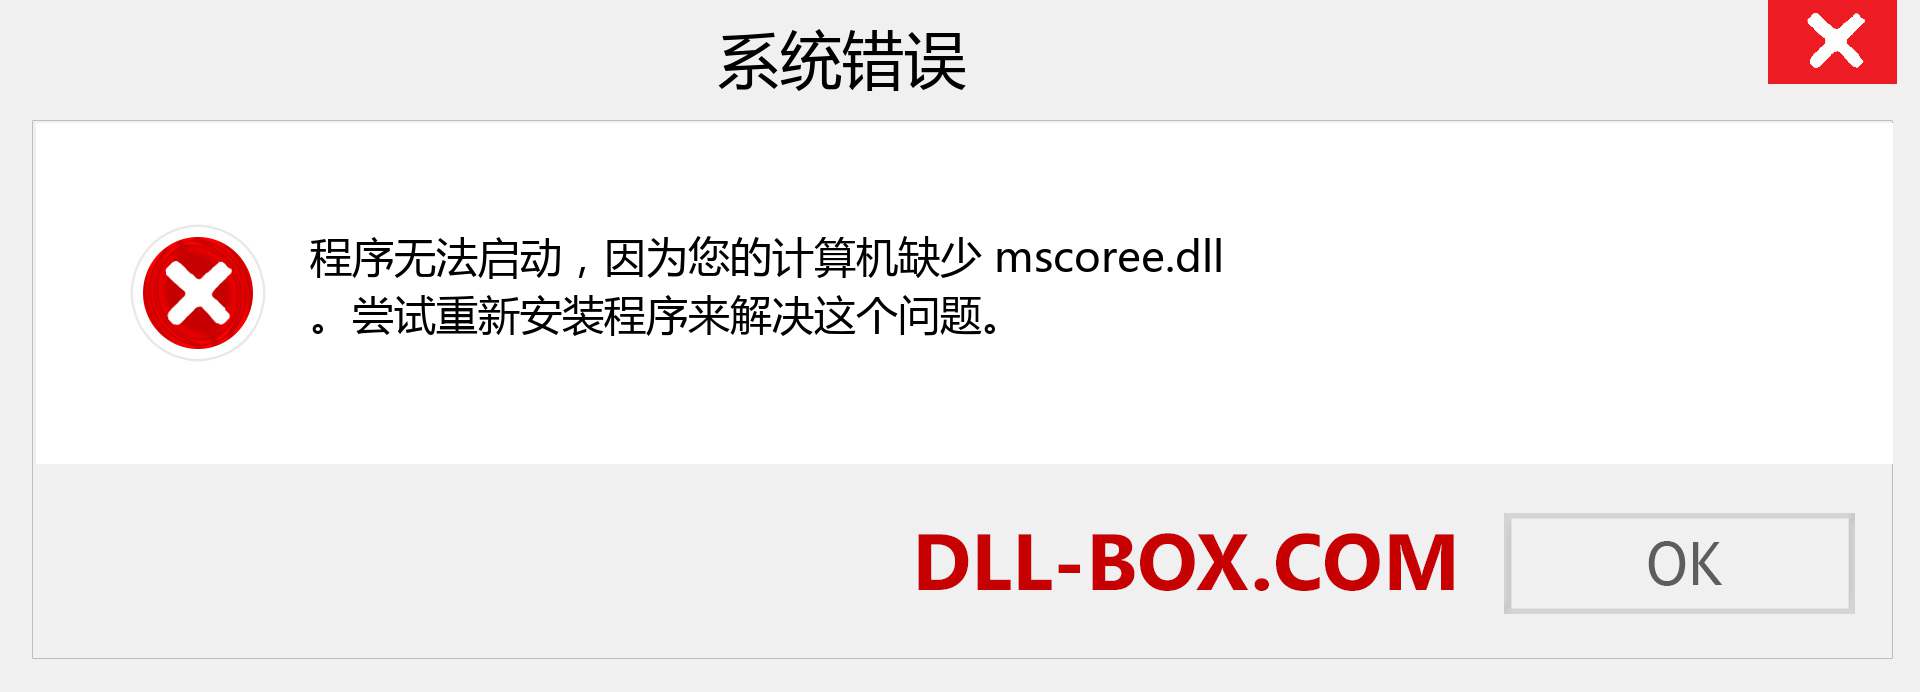 mscoree.dll 文件丢失？。 适用于 Windows 7、8、10 的下载 - 修复 Windows、照片、图像上的 mscoree dll 丢失错误